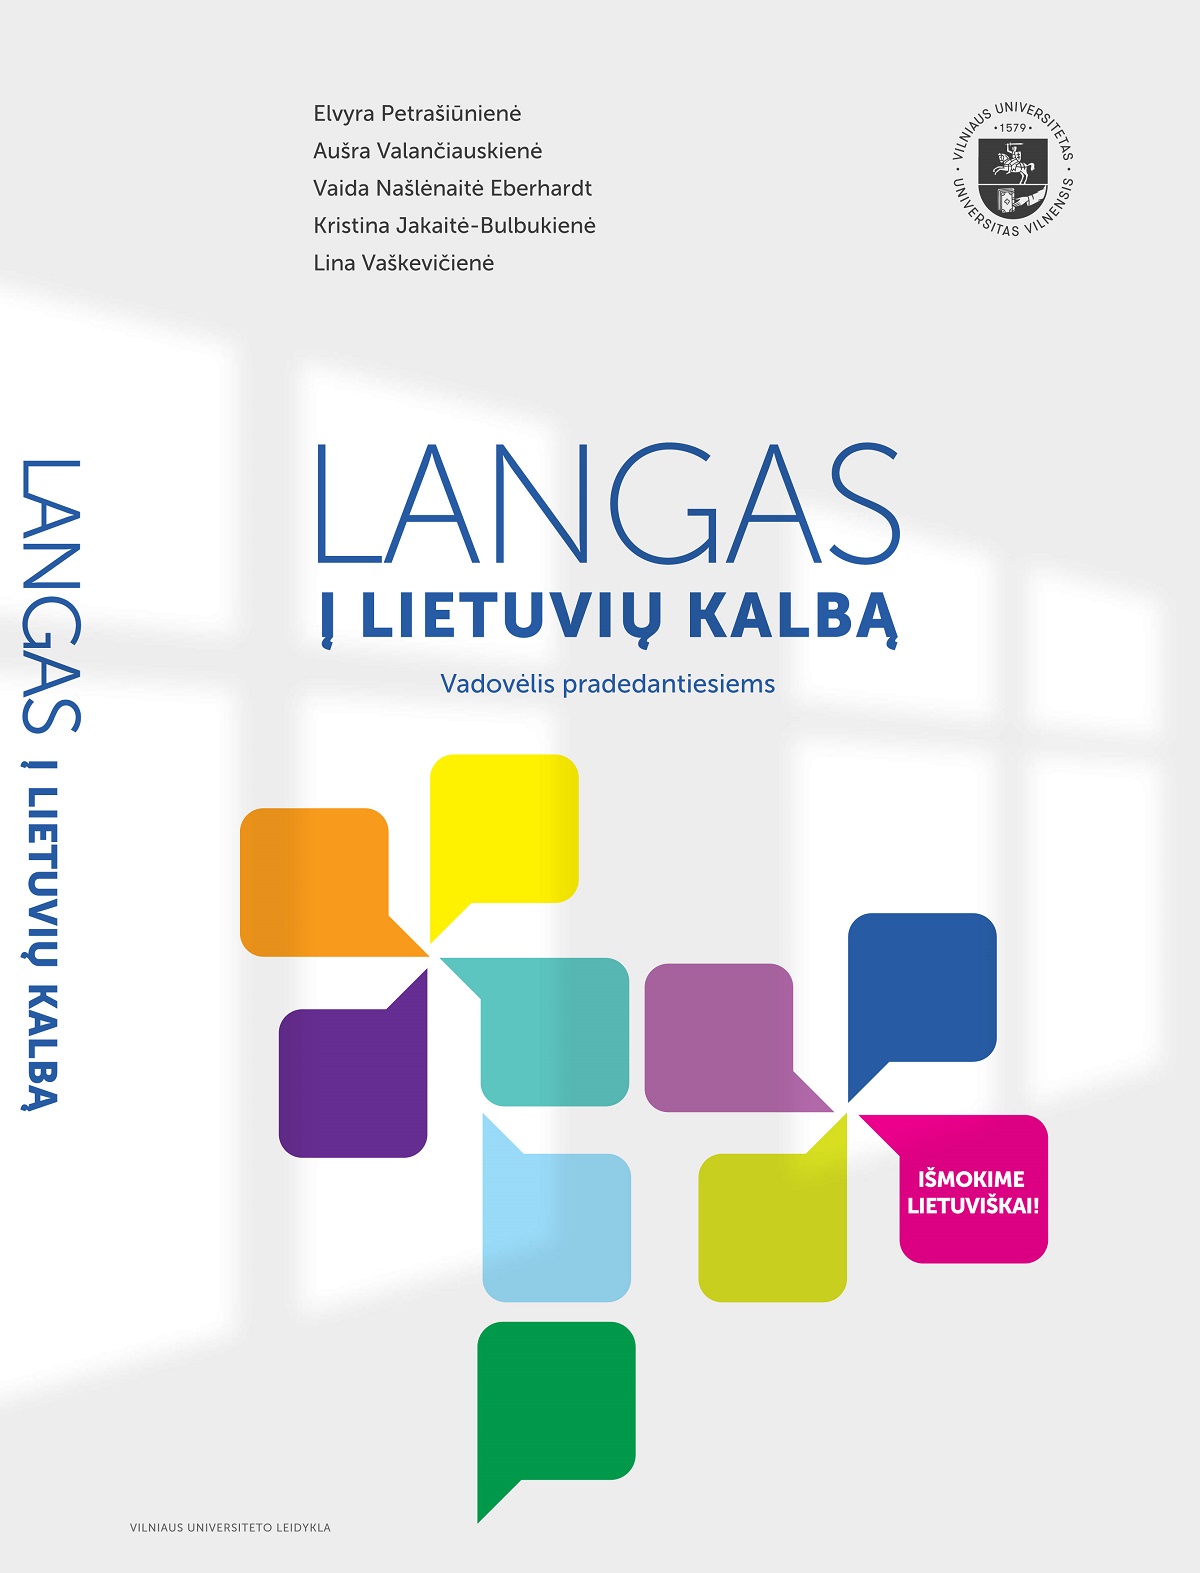 Langas į lietuvių kalbą 2019